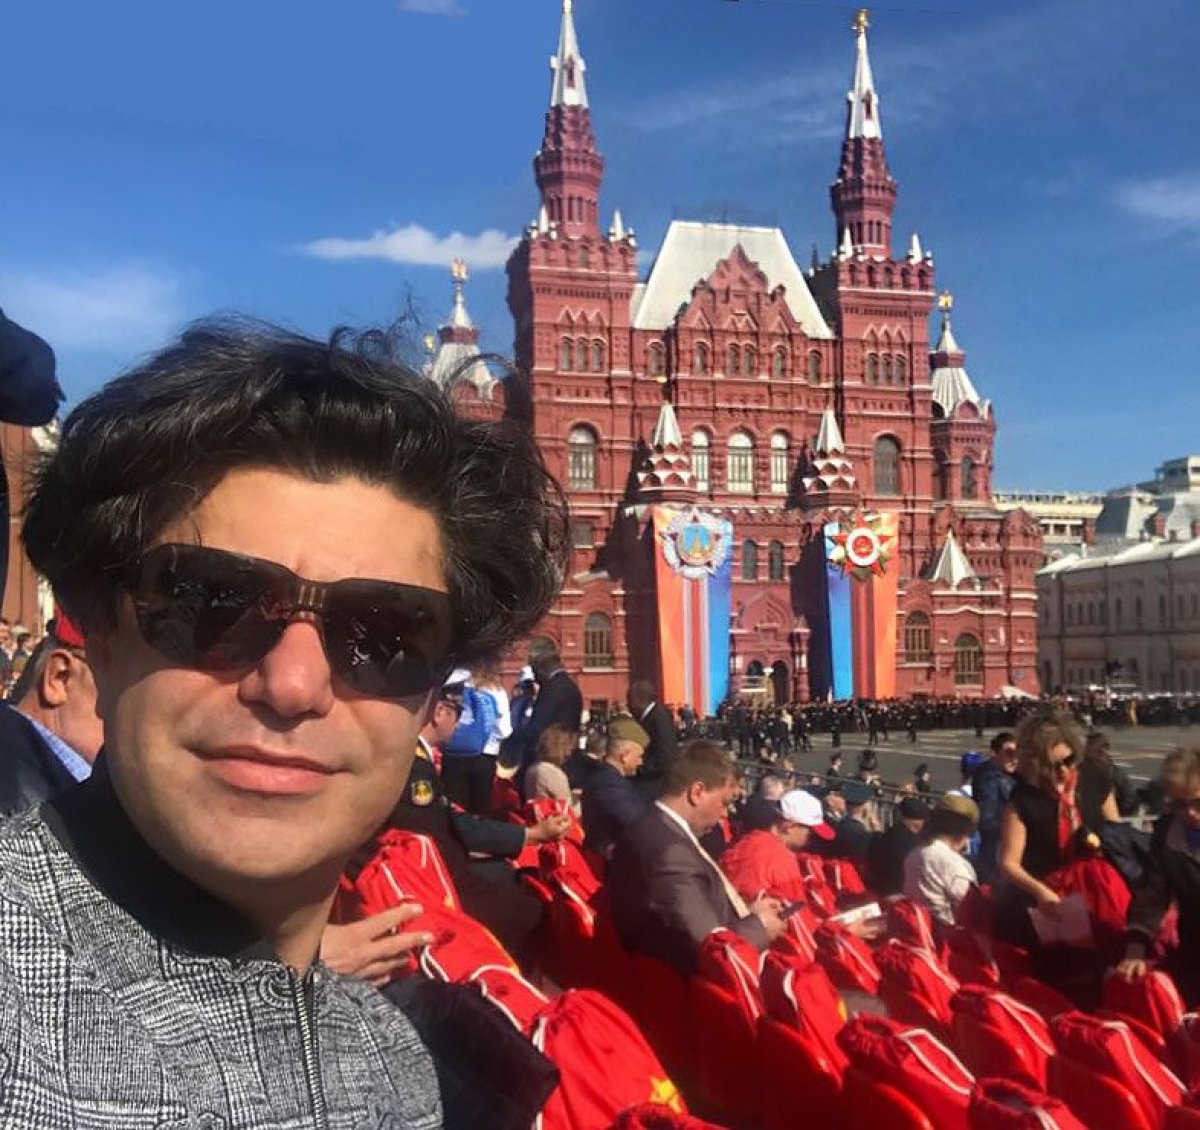 Ректор Академии Николай Цискаридзе встретил День 73-ей годовщины Великой Победы на Красной площади в Москве. А как вы отмечаете праздник?